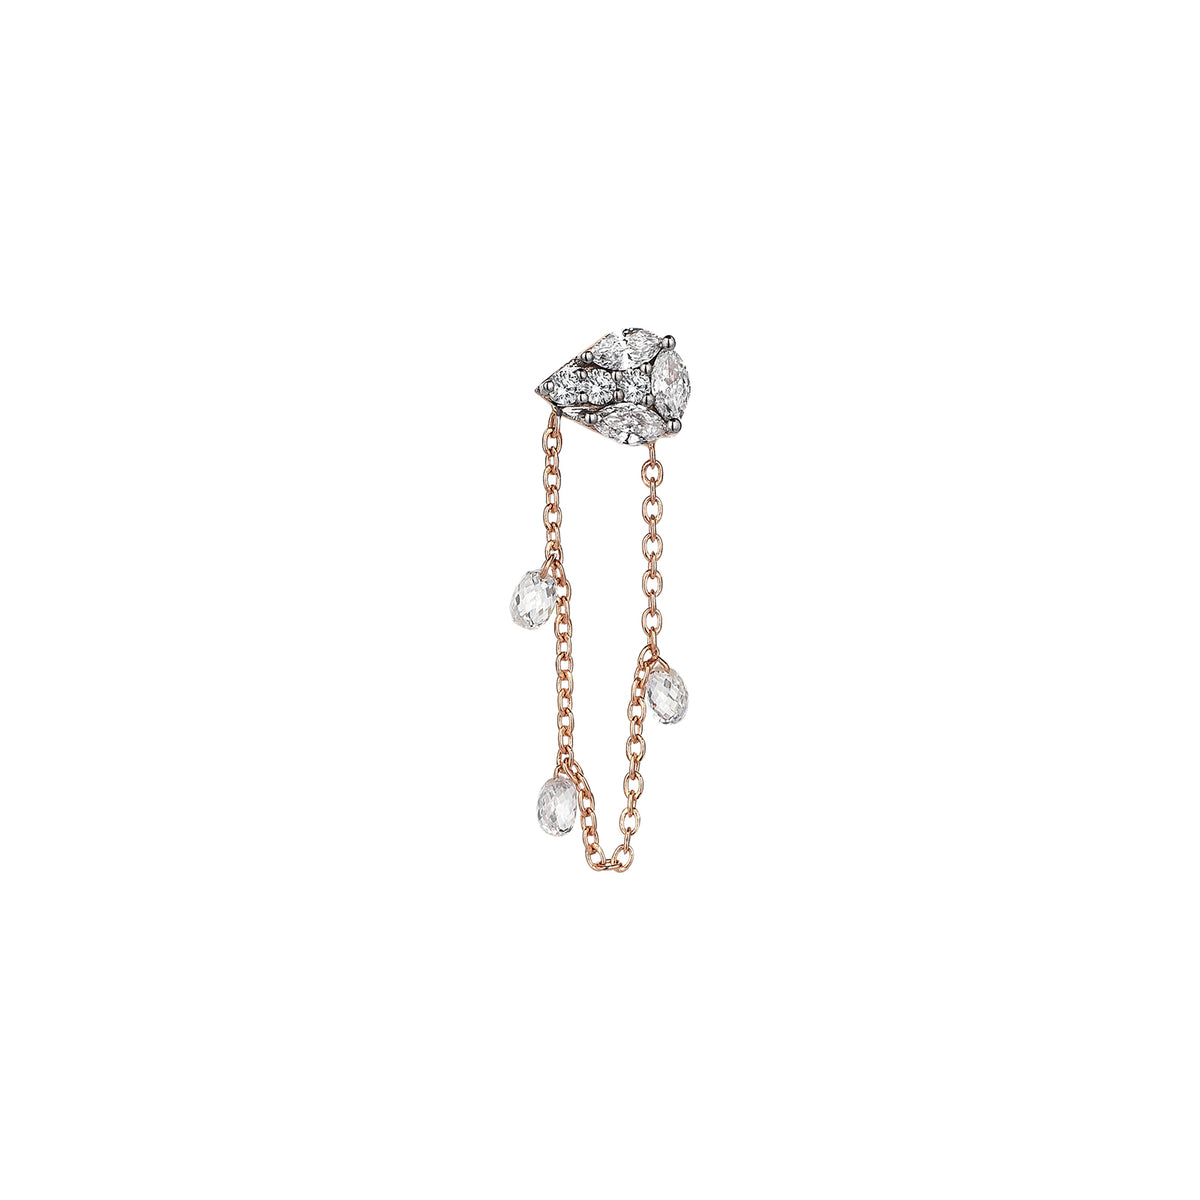 Tawny Earring Roslow Gold / Briolette White Diamond